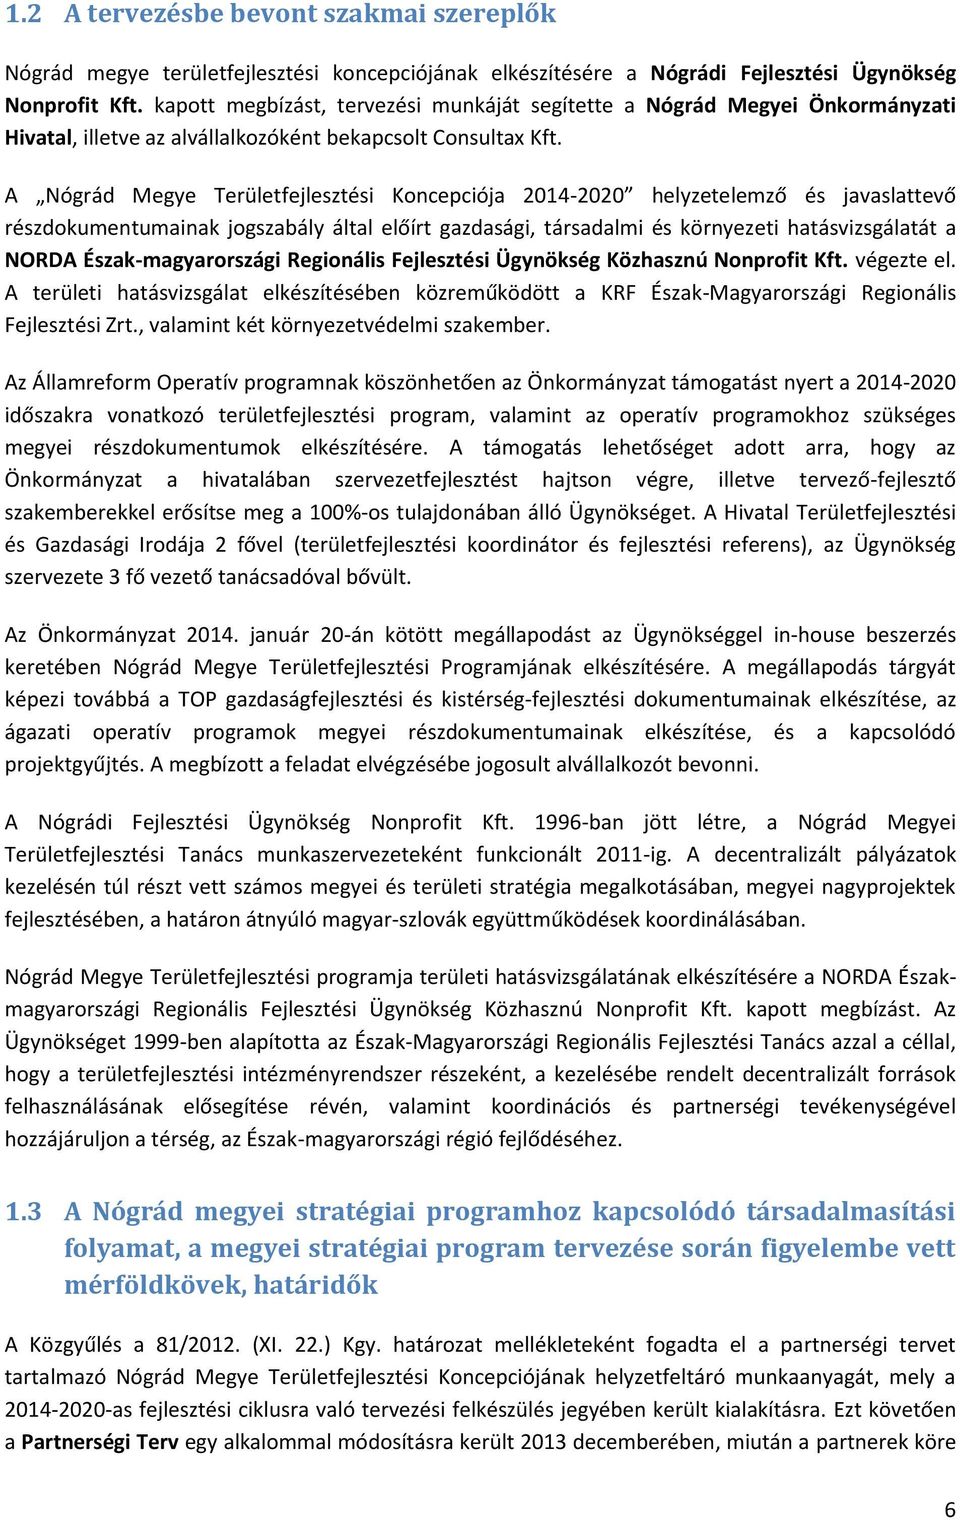 A Nógrád Megye Területfejlesztési Koncepciója 2014-2020 helyzetelemző és javaslattevő részdokumentumainak jogszabály által előírt gazdasági, társadalmi és környezeti hatásvizsgálatát a NORDA